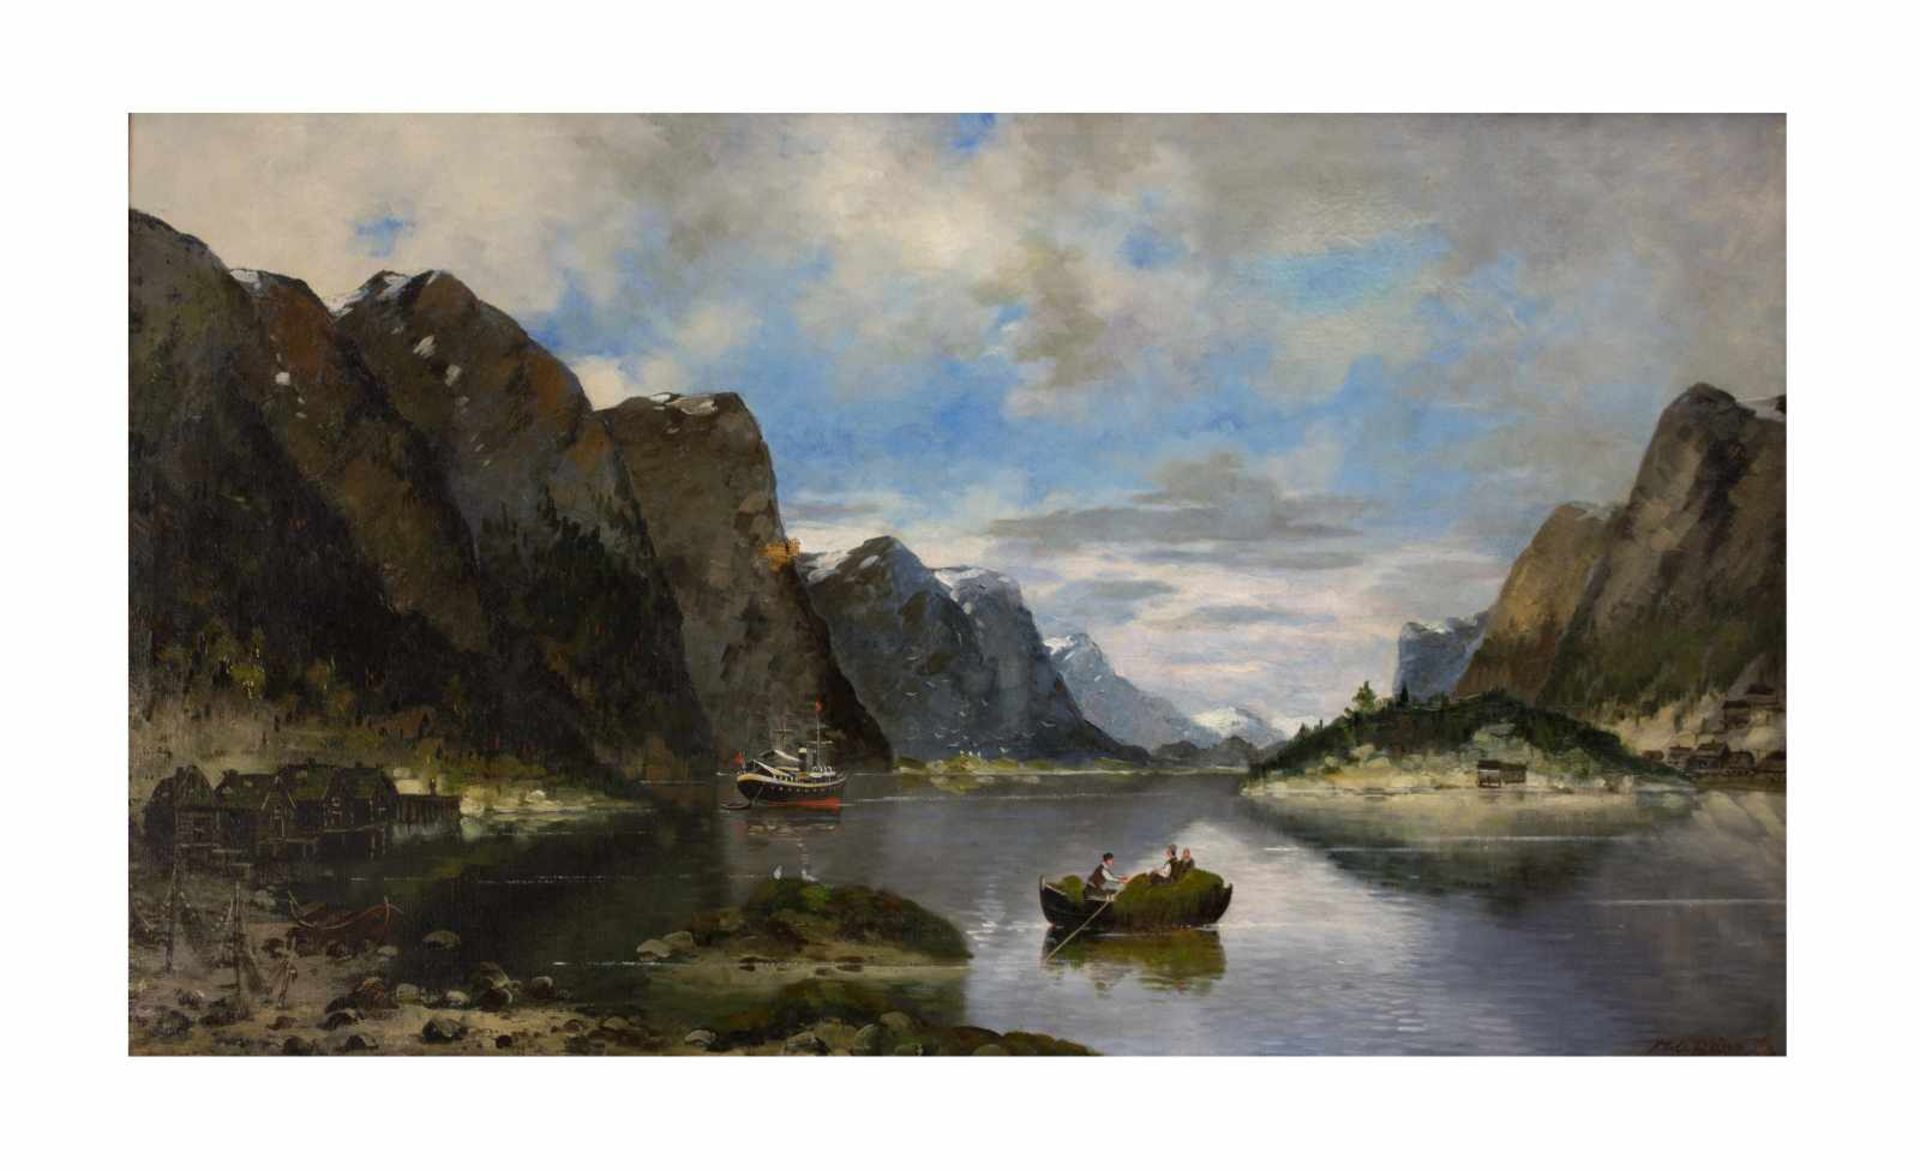 Max Otto Beyer (1863 Berlin - 1902 Düsseldorf) Landschaft in Fjord, Öl auf Leinwand, 69,5 cm x 119,5